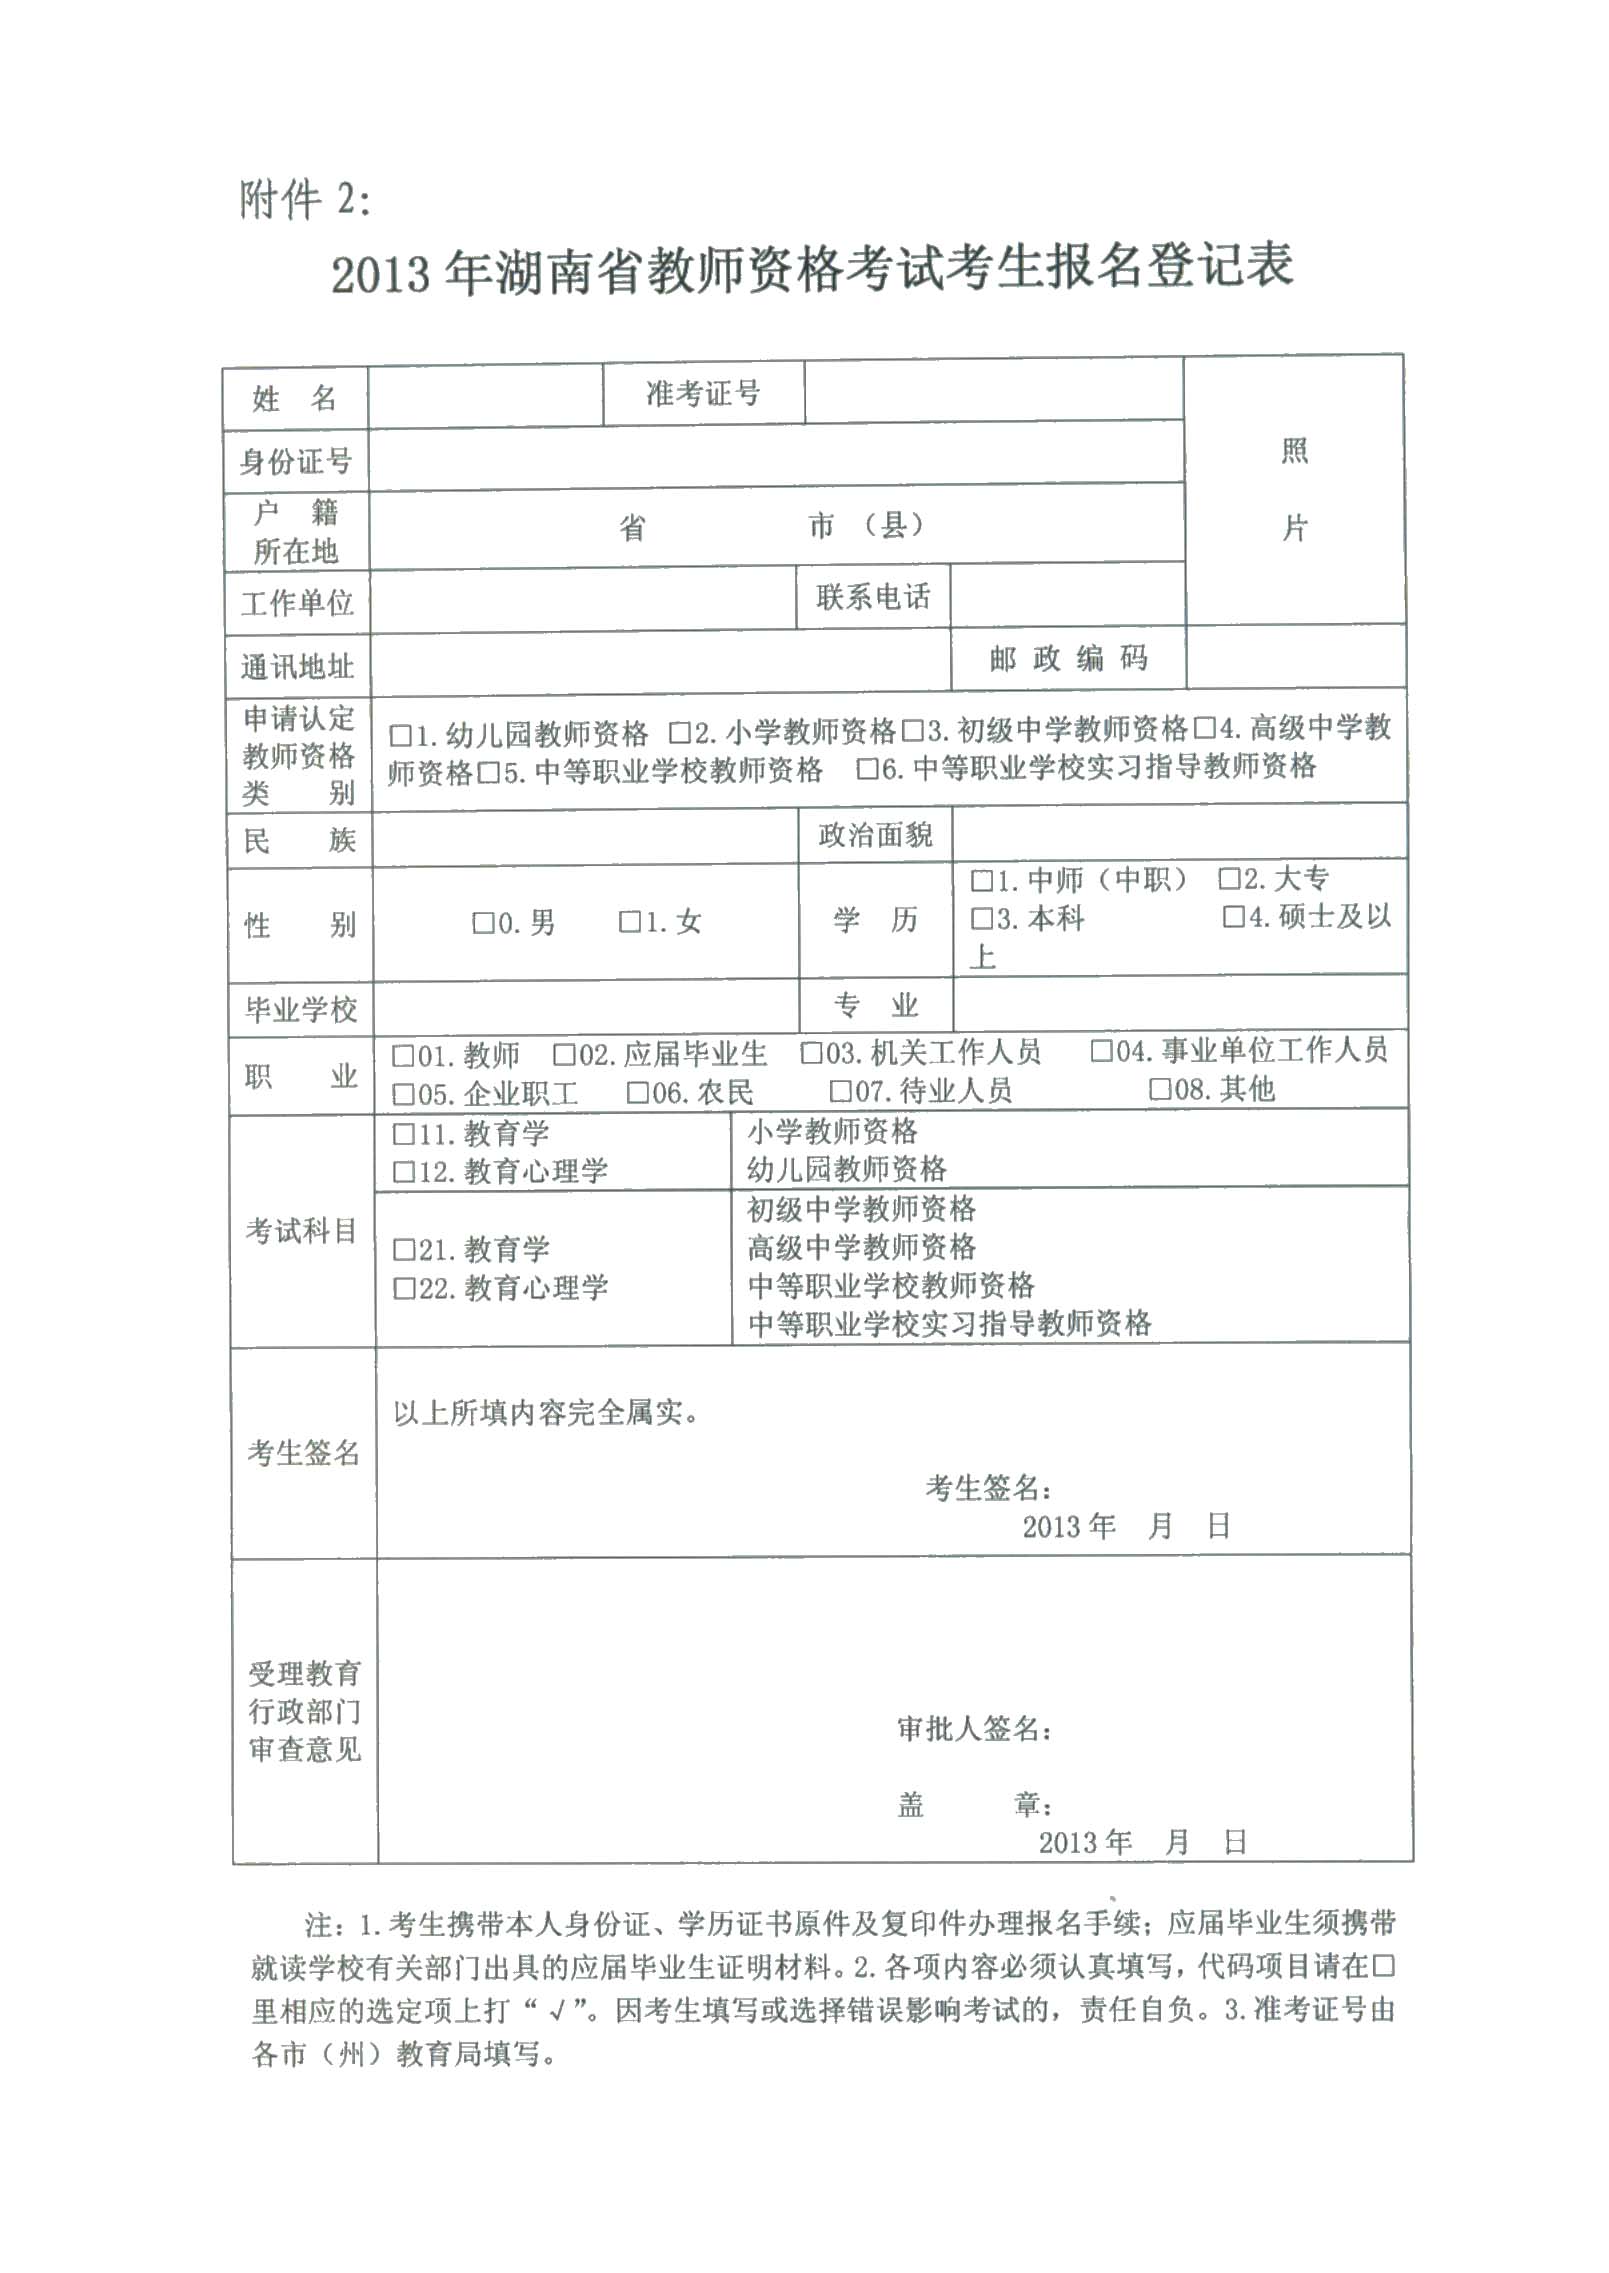 郴州市2013年教师资格认定工作通知-教师资格